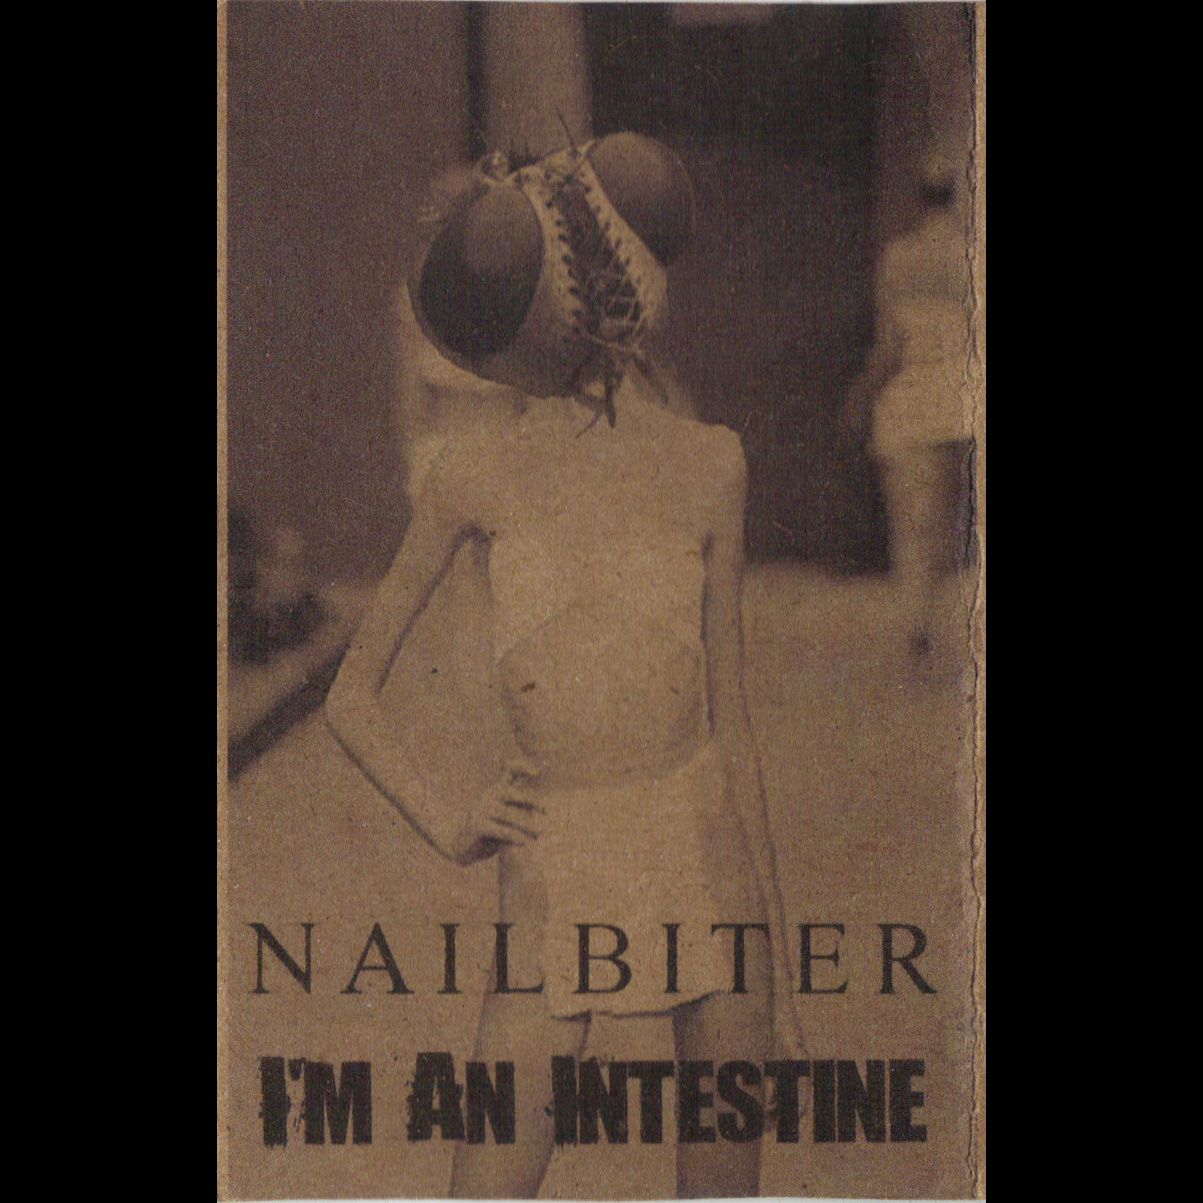 NAILBITER - Nailbiter / I'm An Intestine cover 